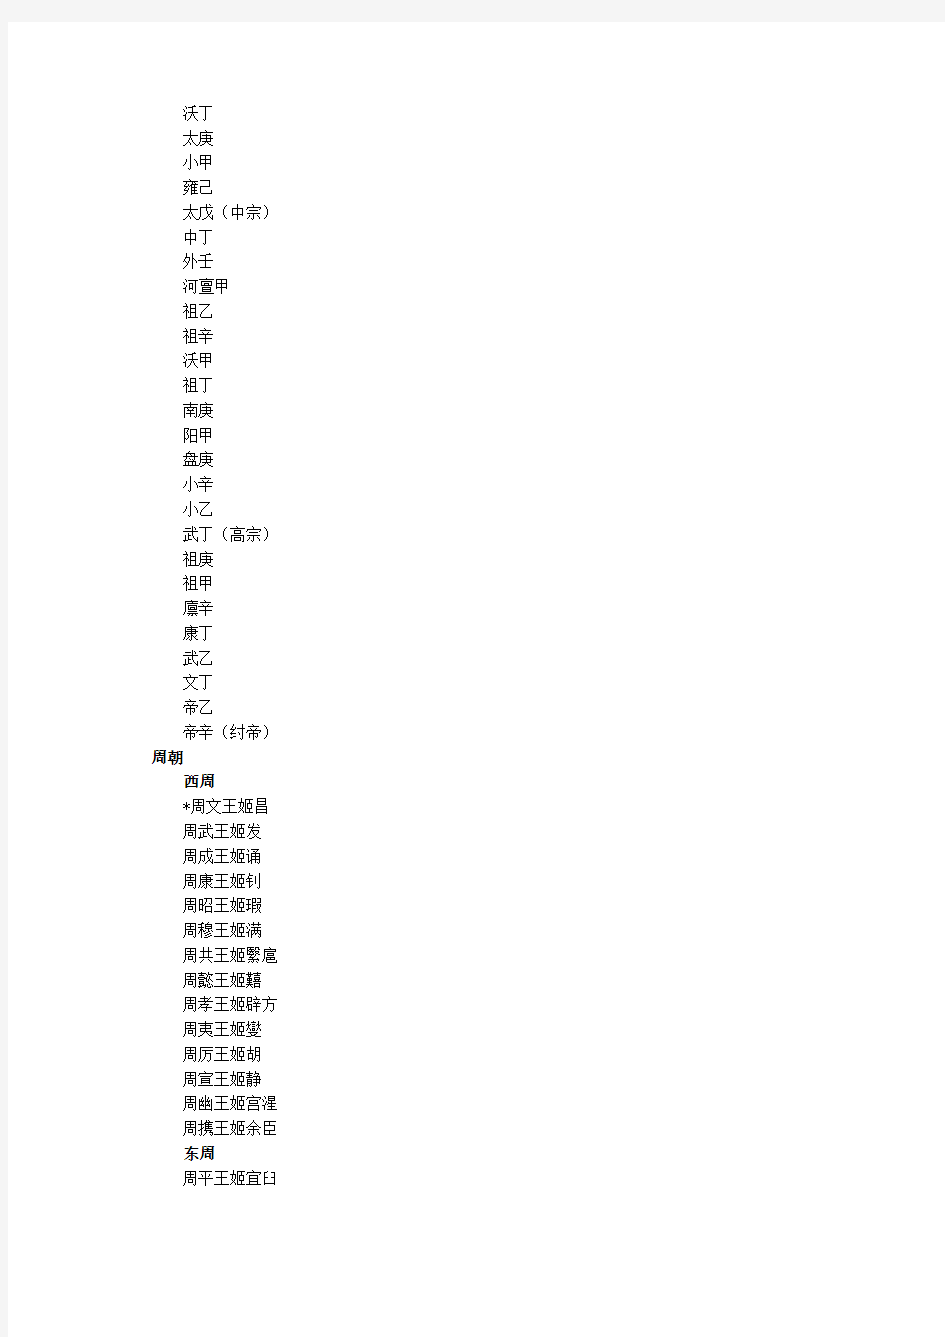 中国历代君王列表